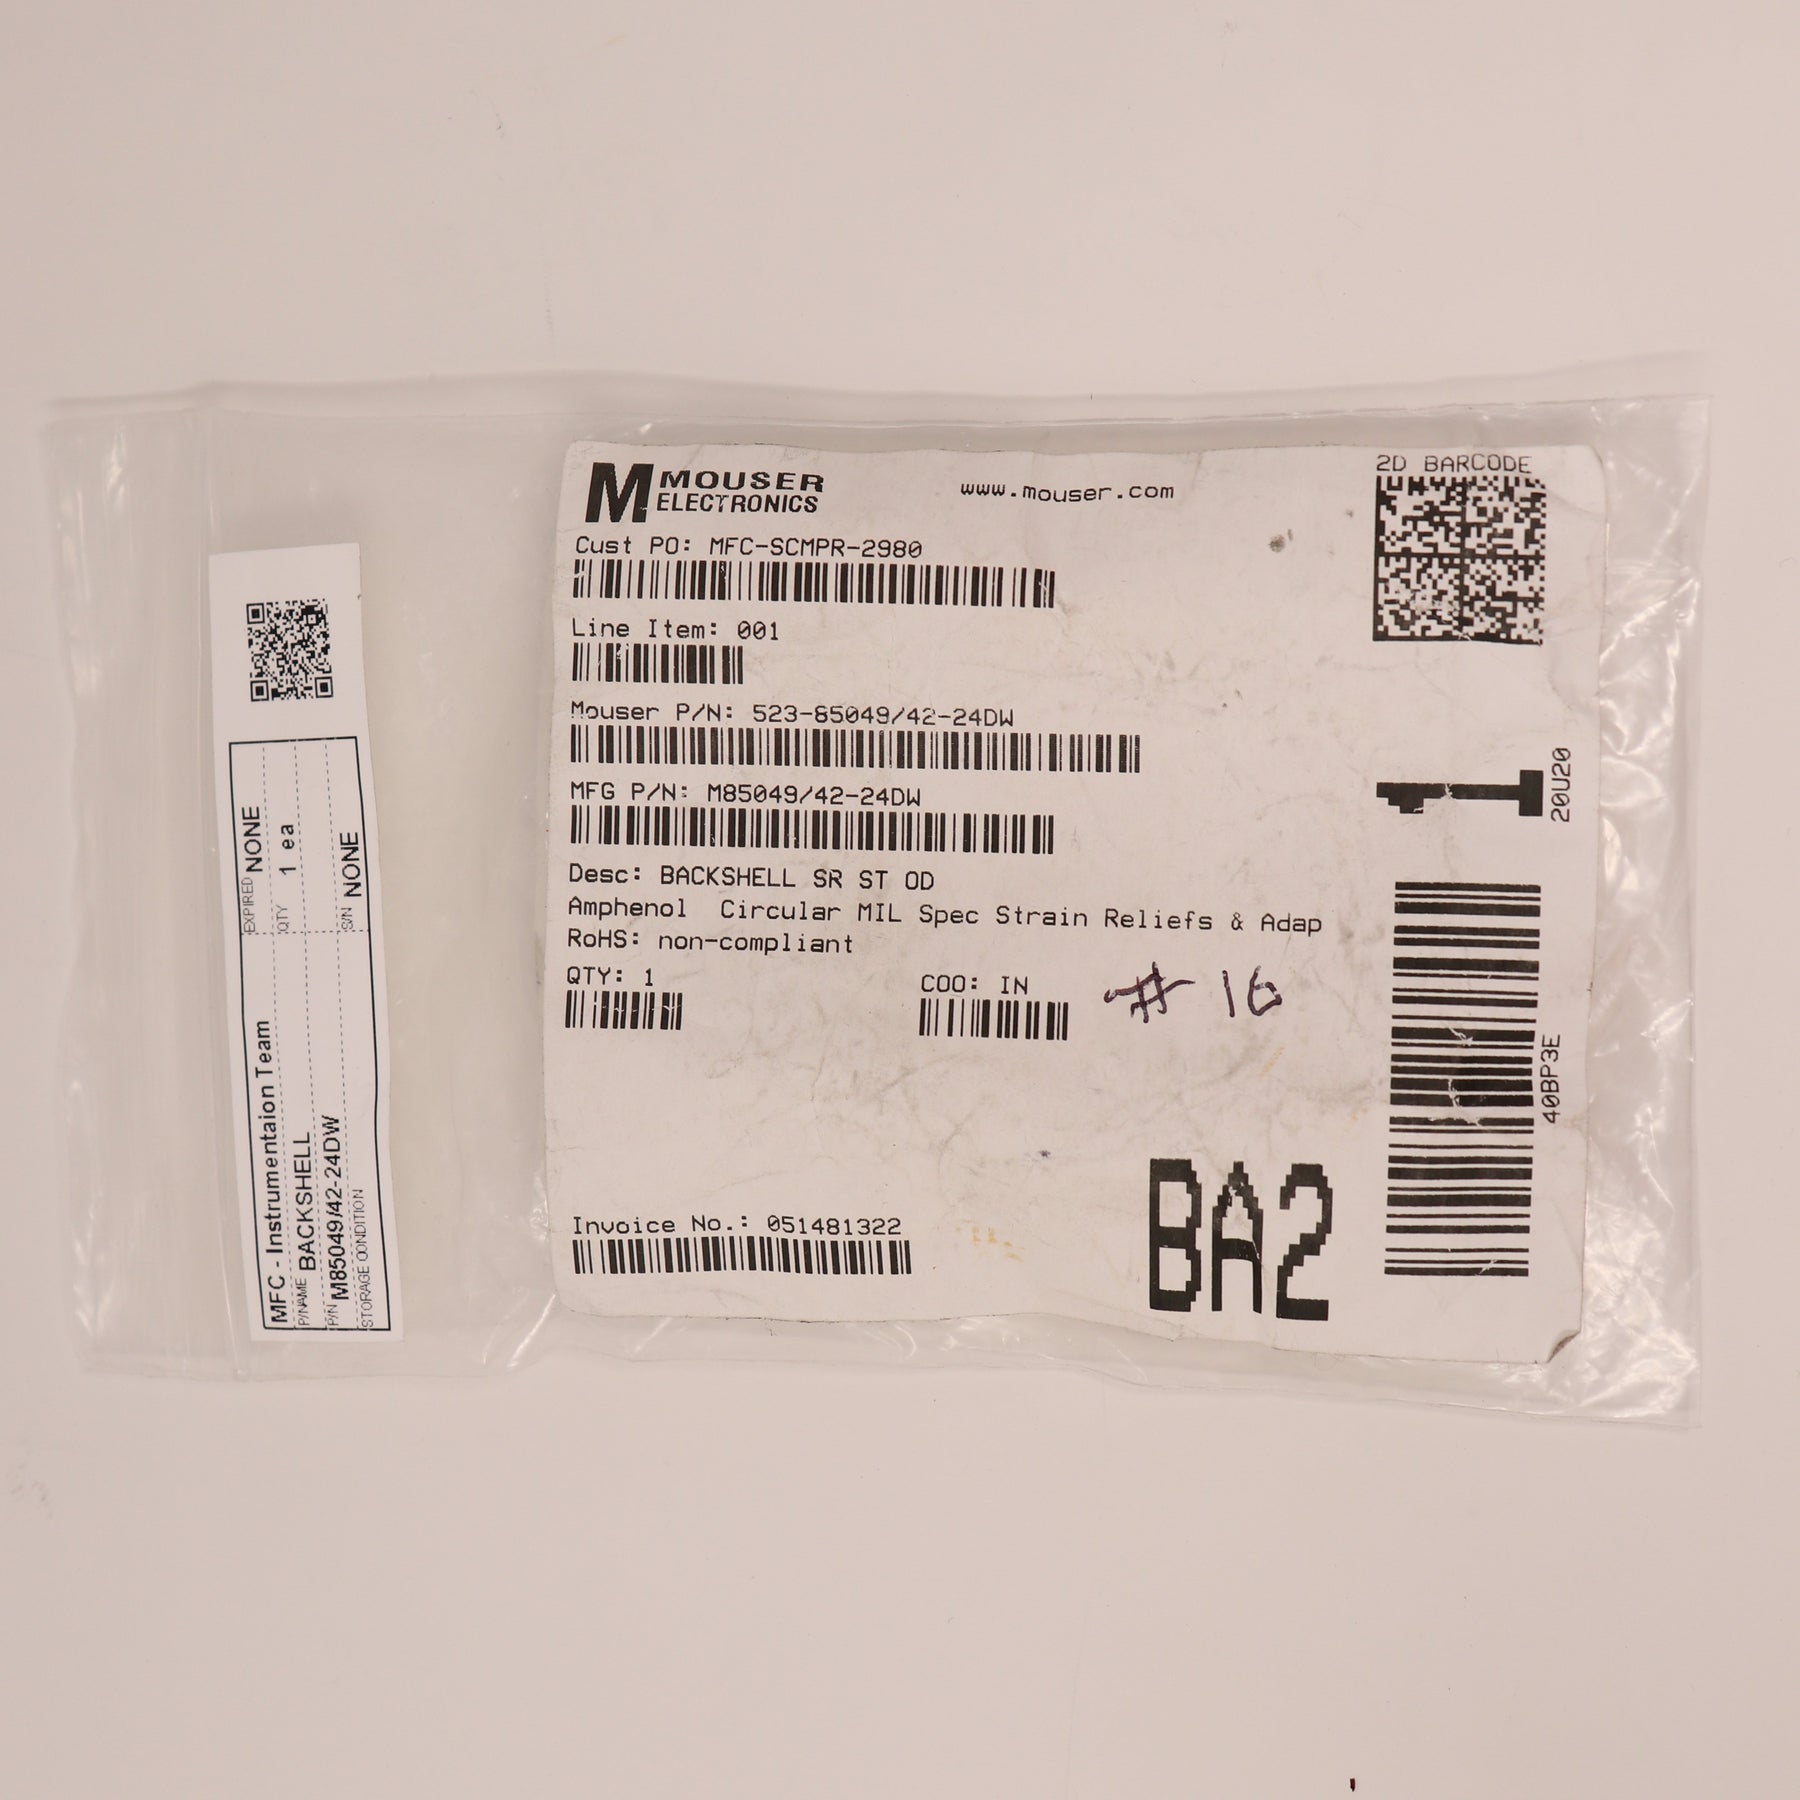 Amphenol Backshell M85049/42-24DW